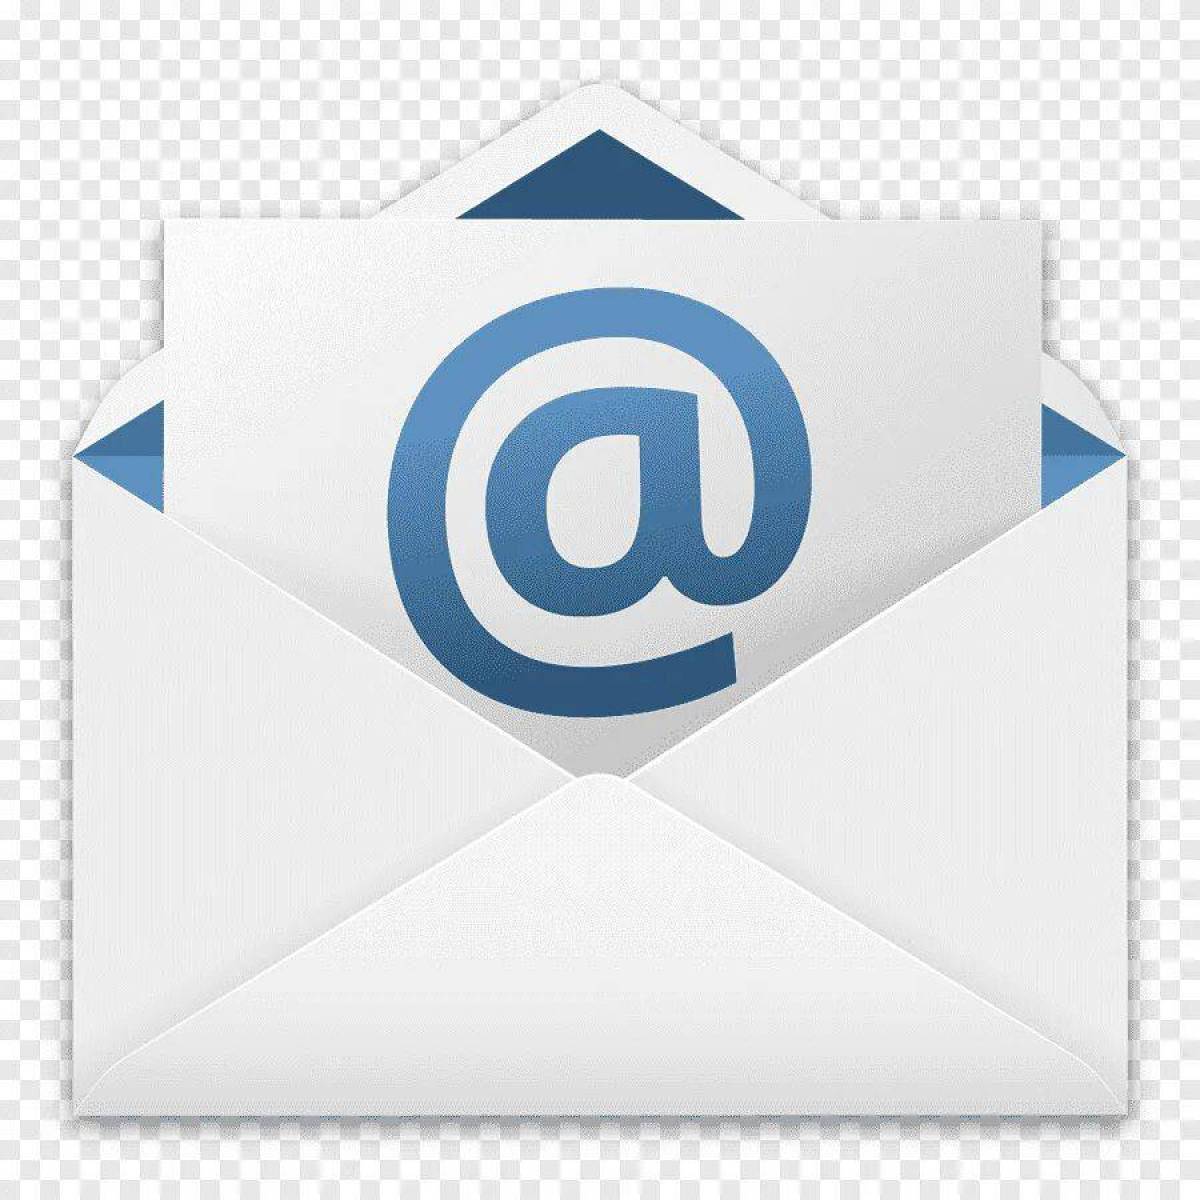 Non mail. Значок почты. Mail. Значок почты майл. Логотип электронной почты.